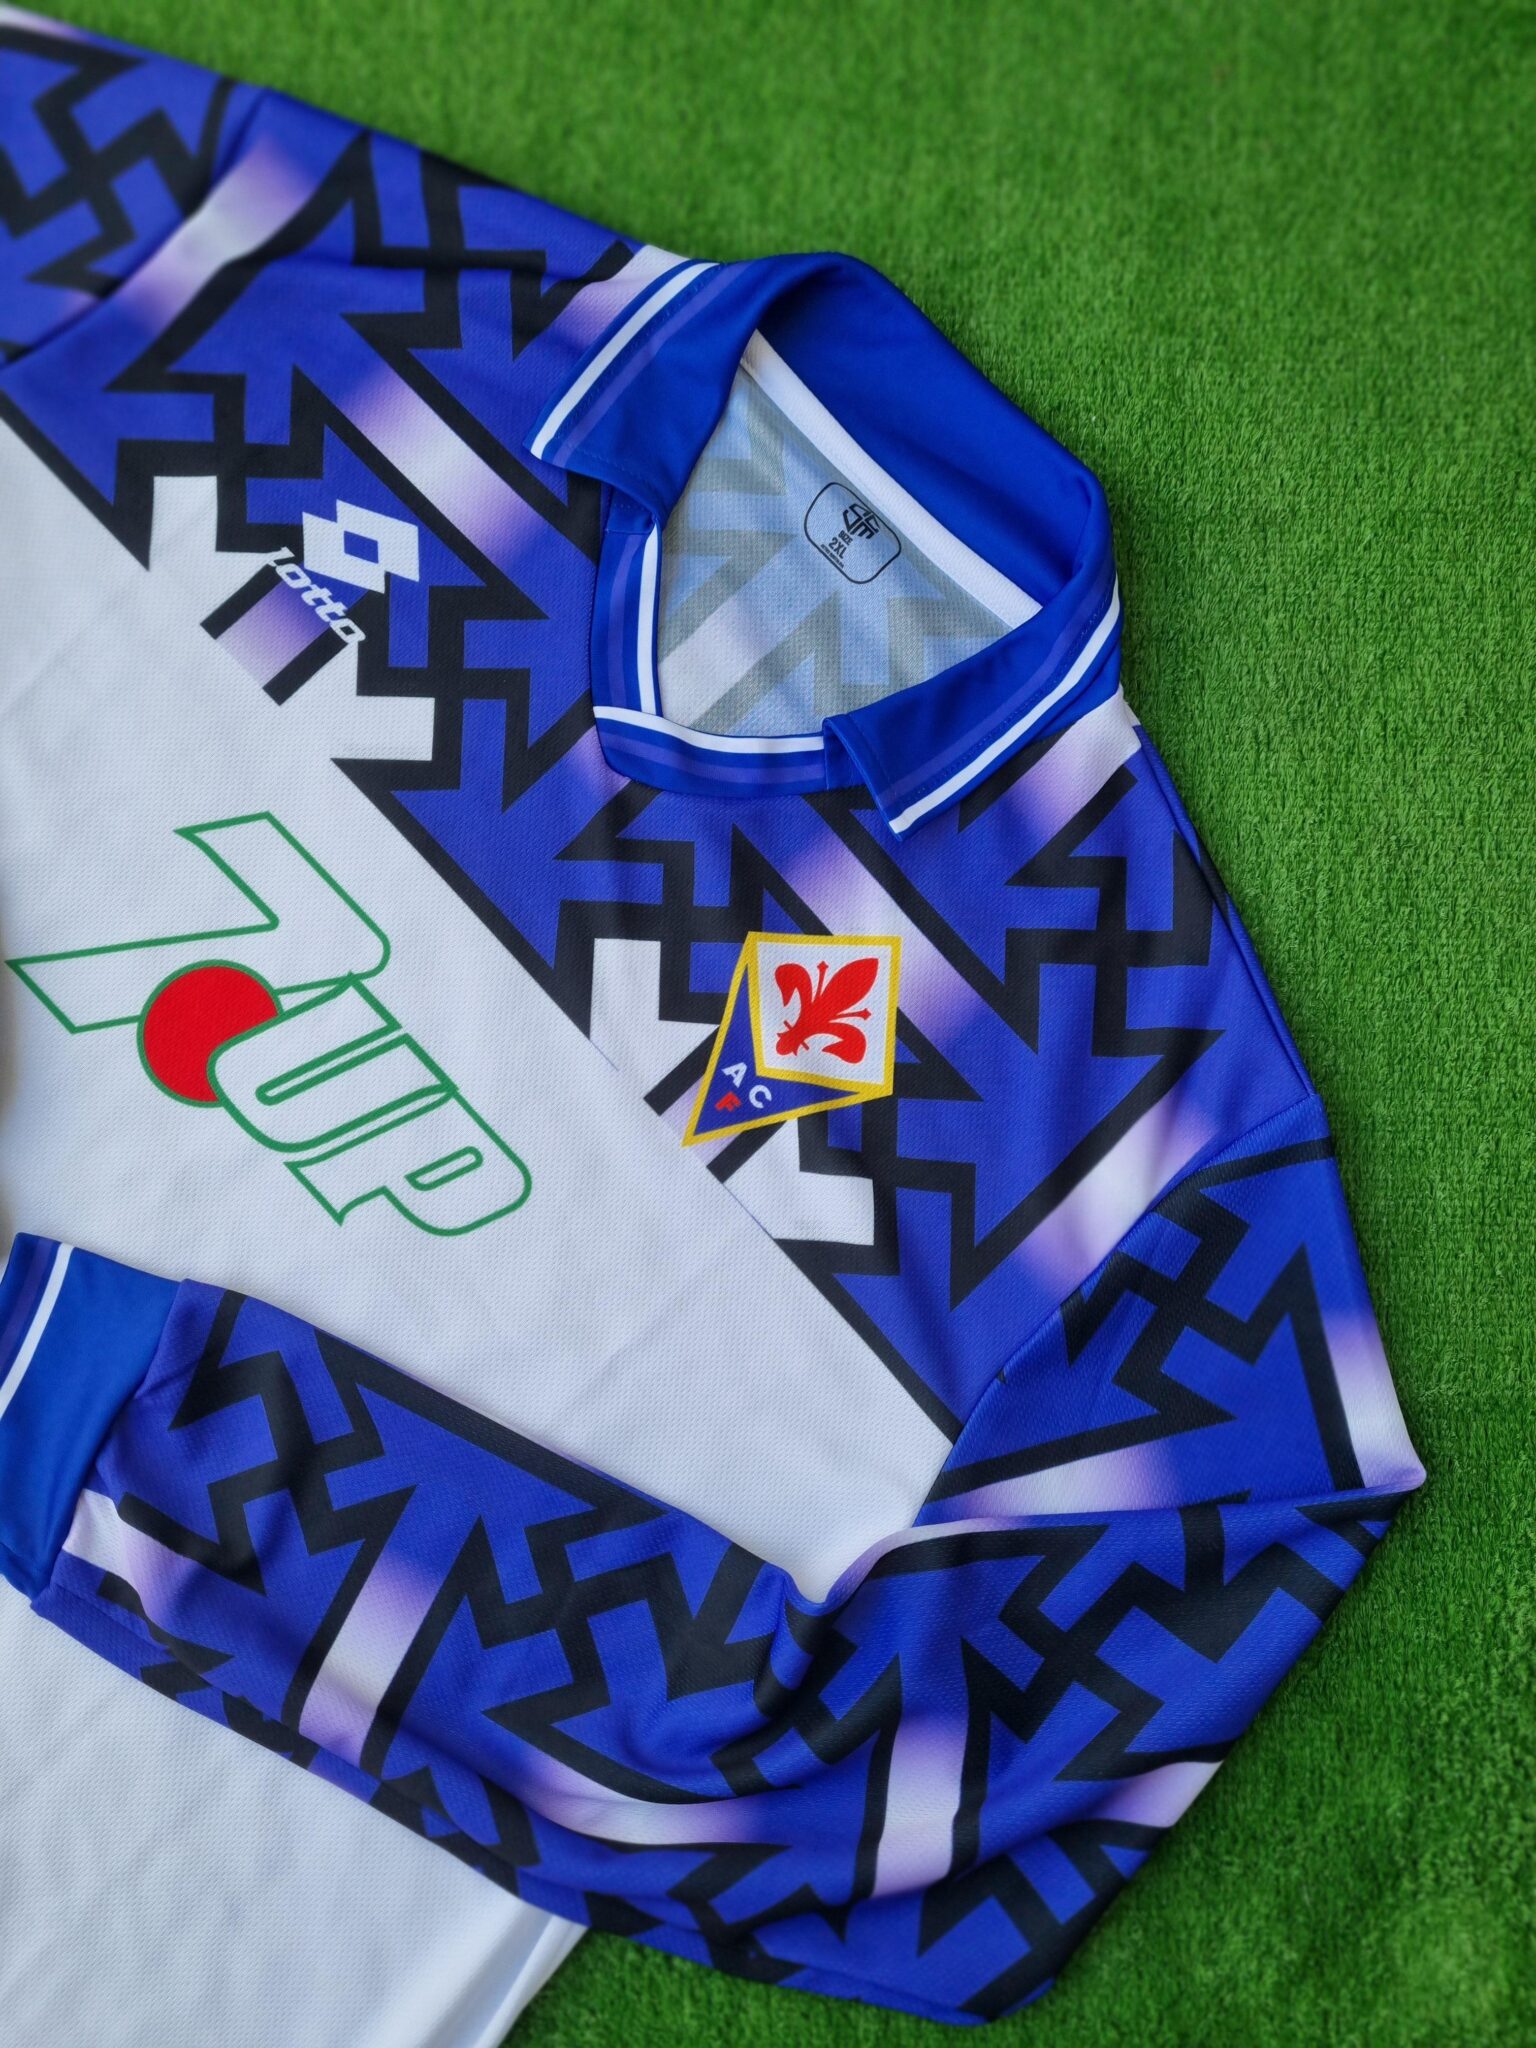 AFC Fiorentina Calcio Away Maglia 1992/1993 Jersey Retro Shirt Italy Viola - Sport Club Memories